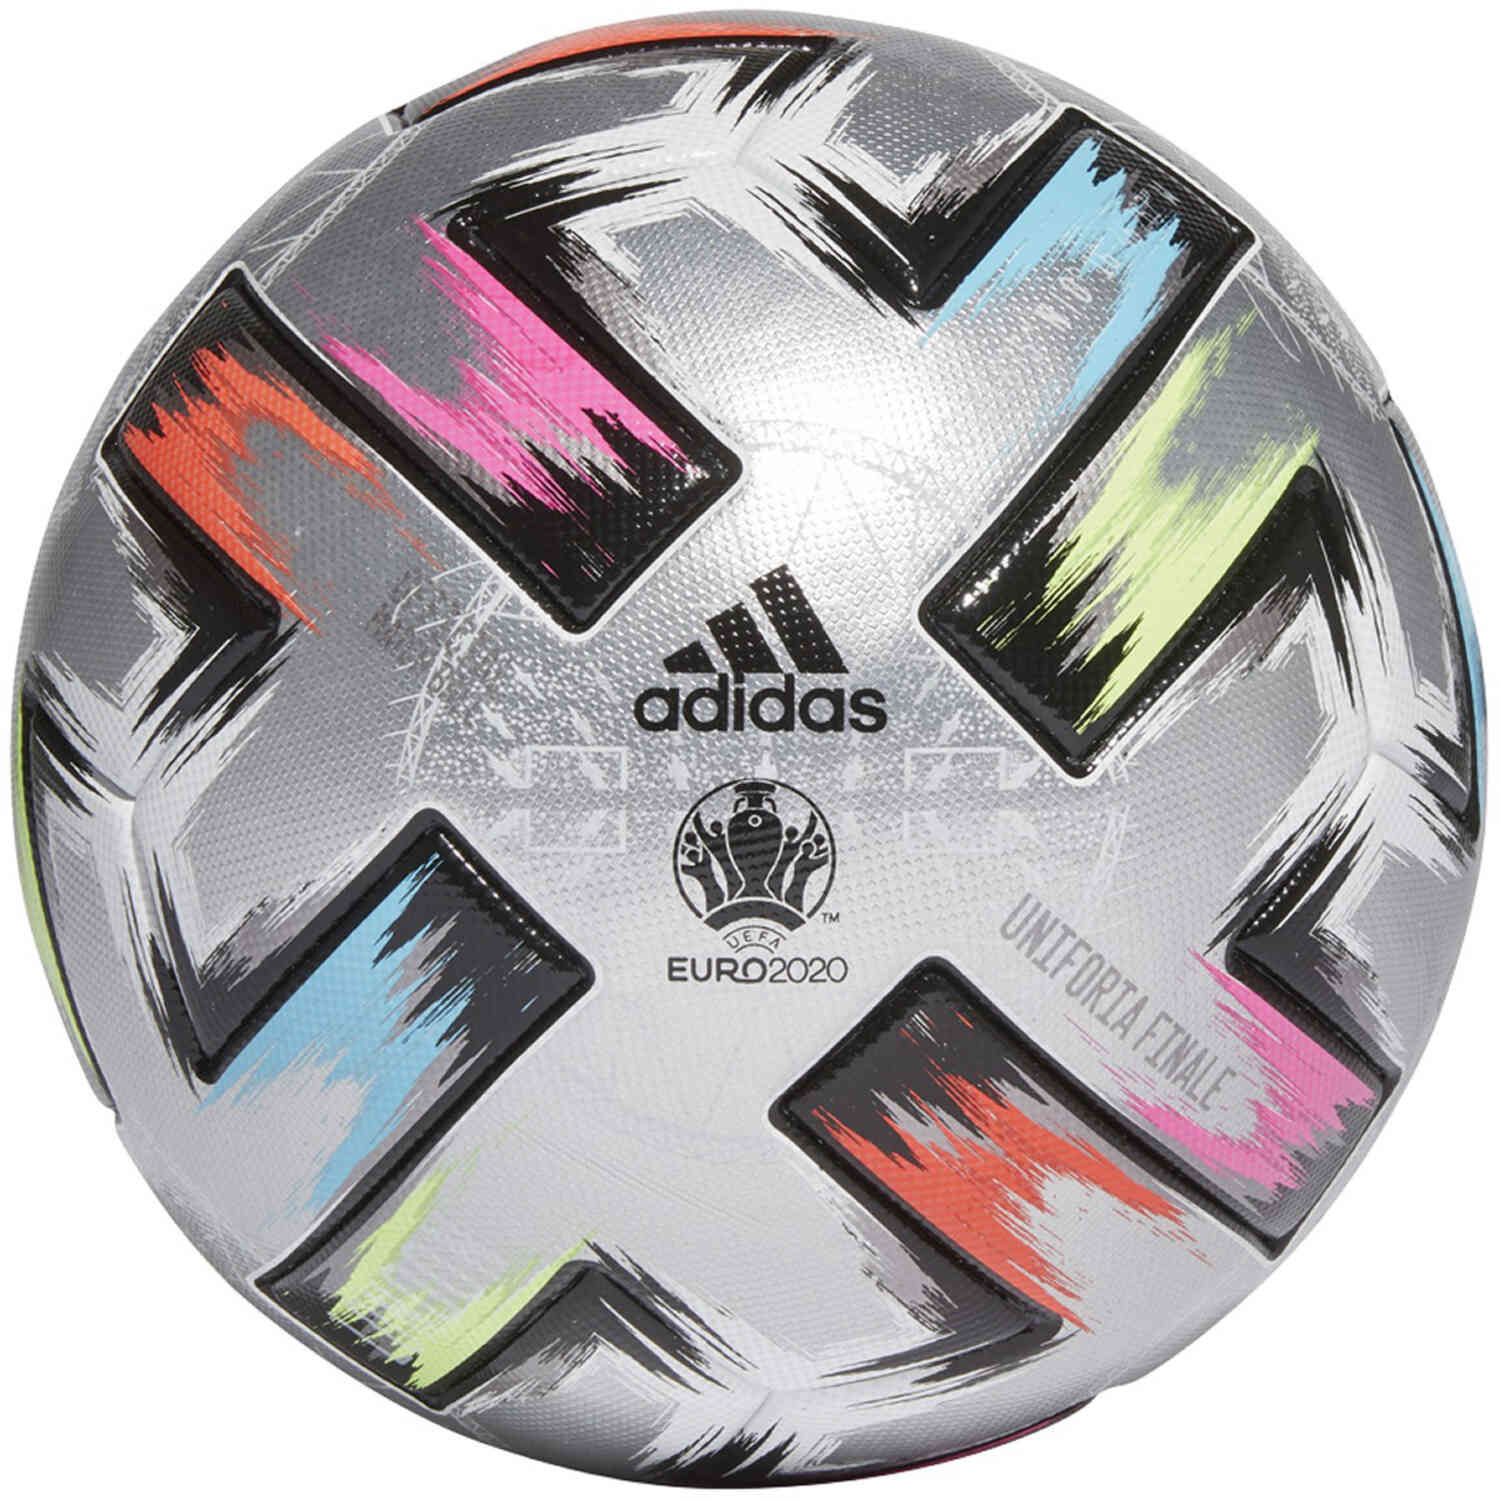 redden Vermaken hoofdstuk adidas Euro 20 Finals Uniforia Pro Official Match Soccer Ball - London -  SoccerPro